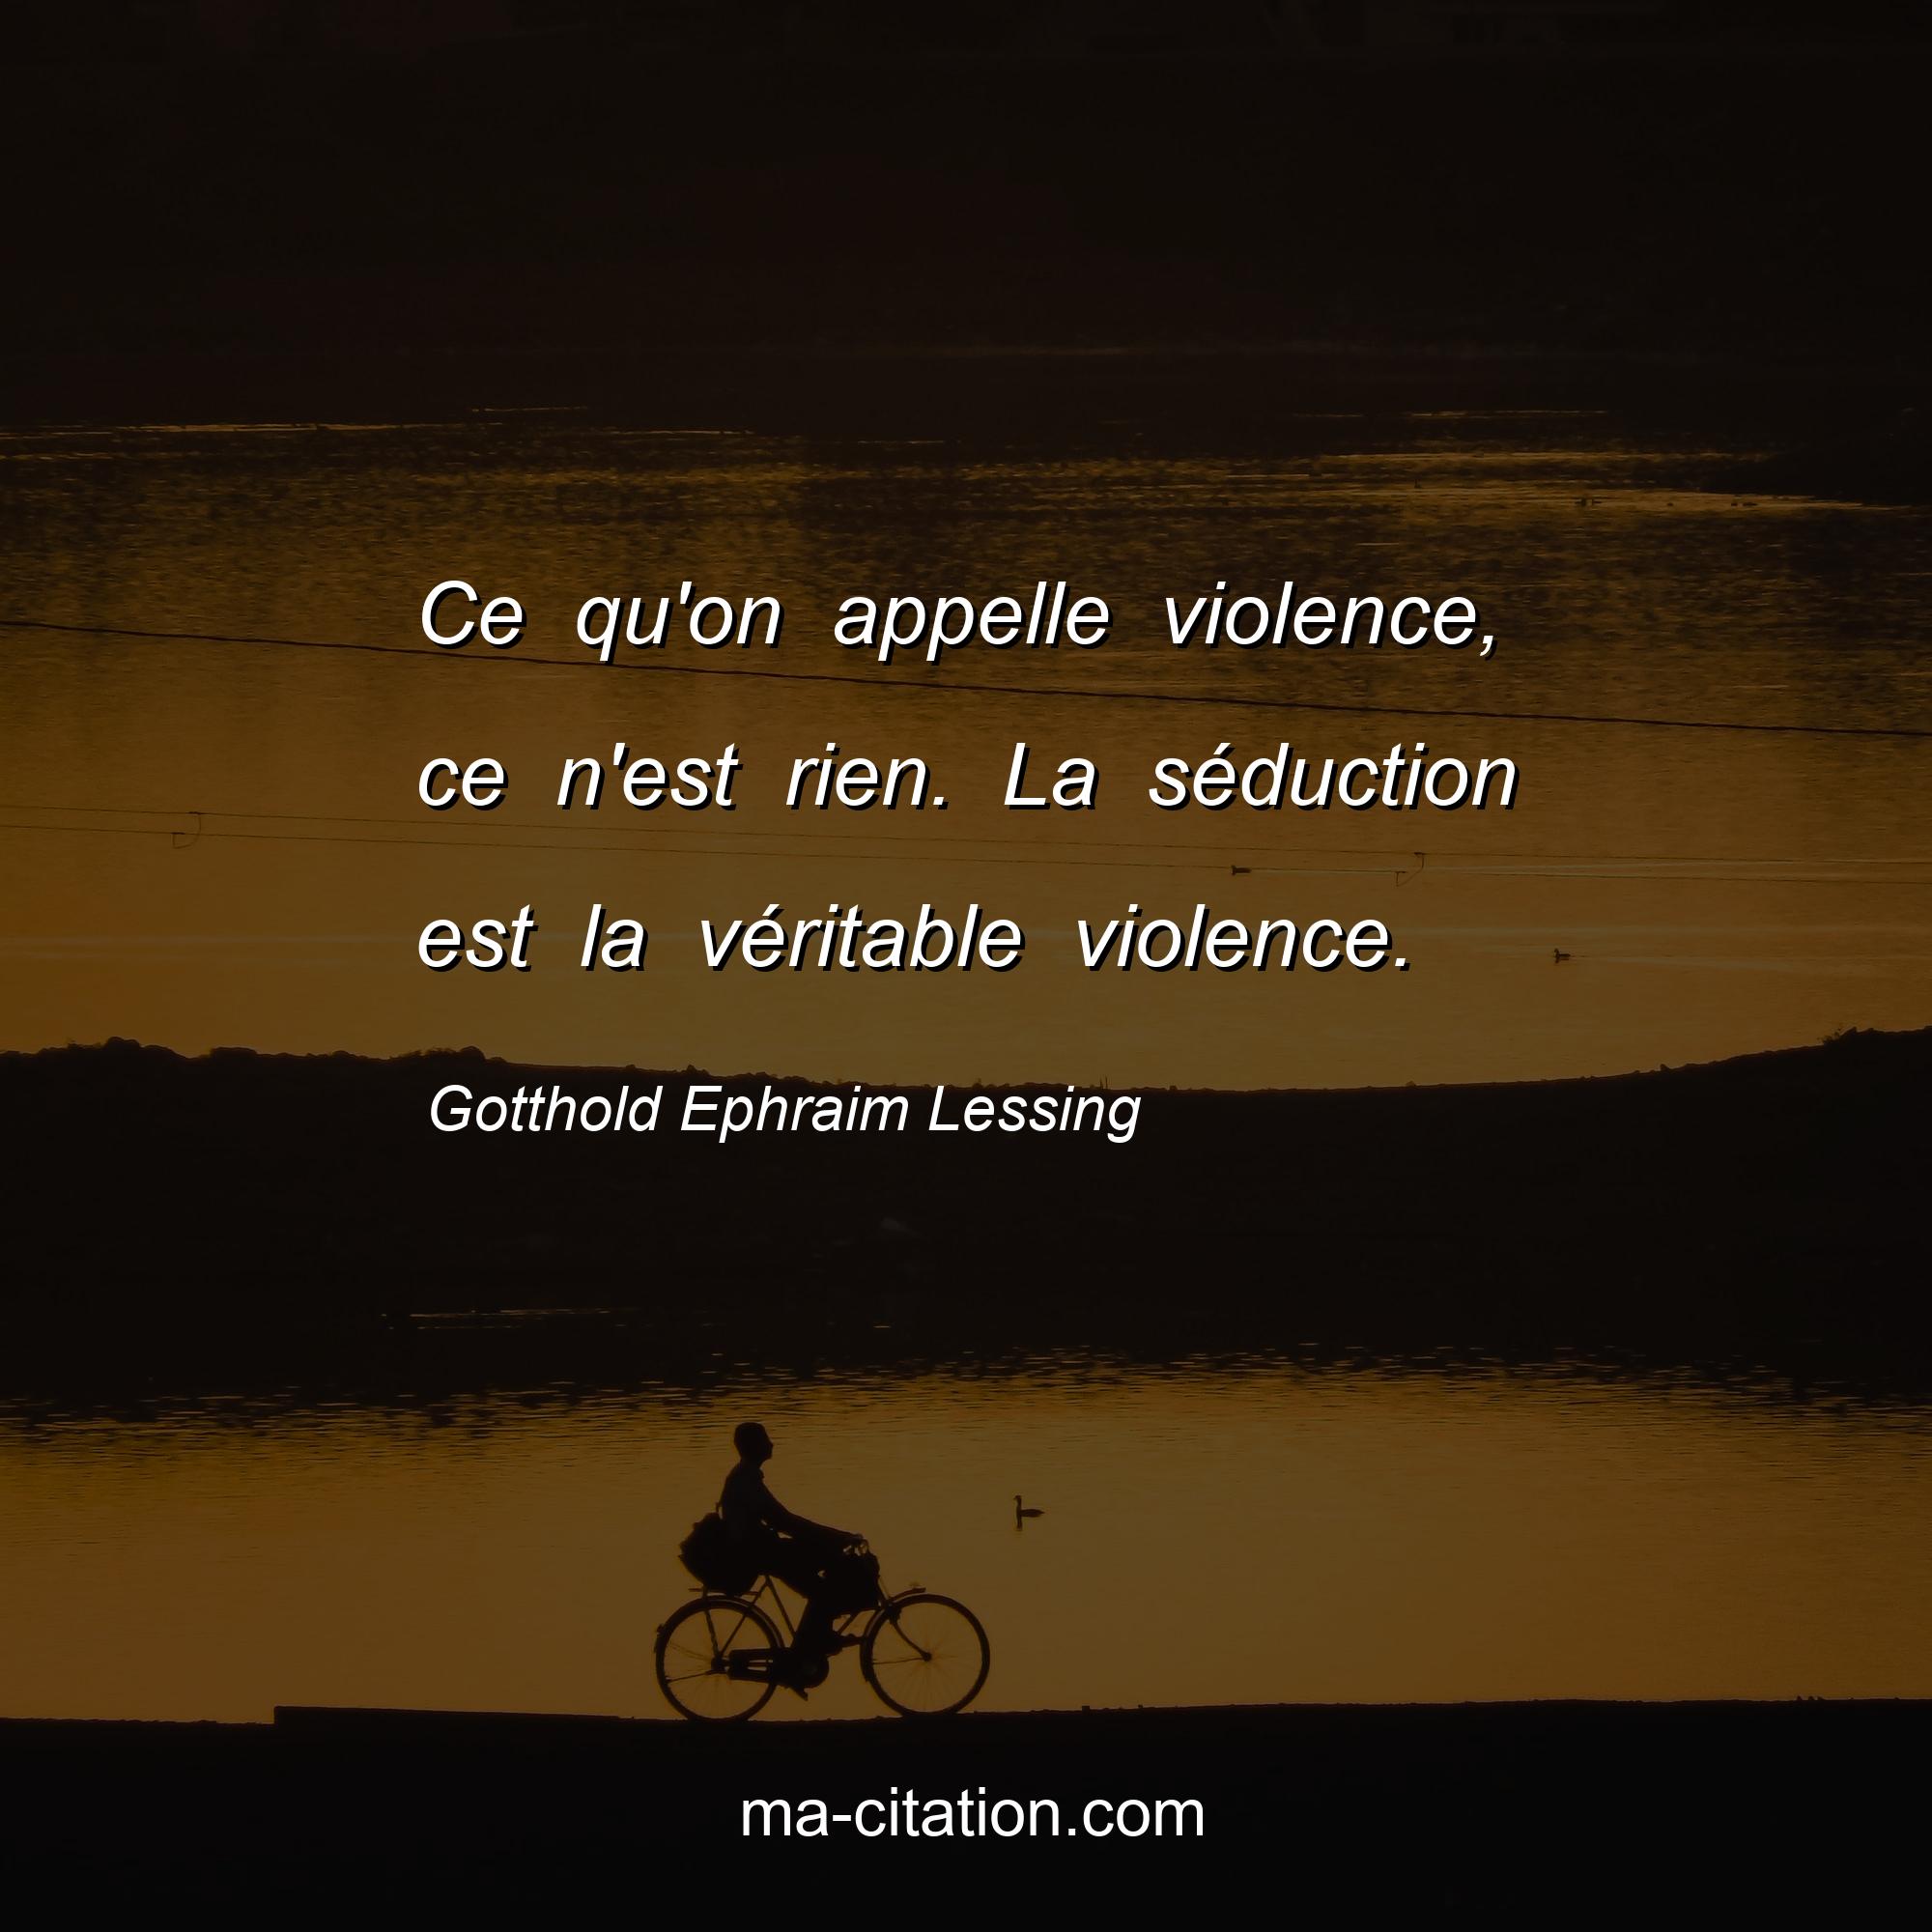 Gotthold Ephraim Lessing : Ce qu'on appelle violence, ce n'est rien. La séduction est la véritable violence.